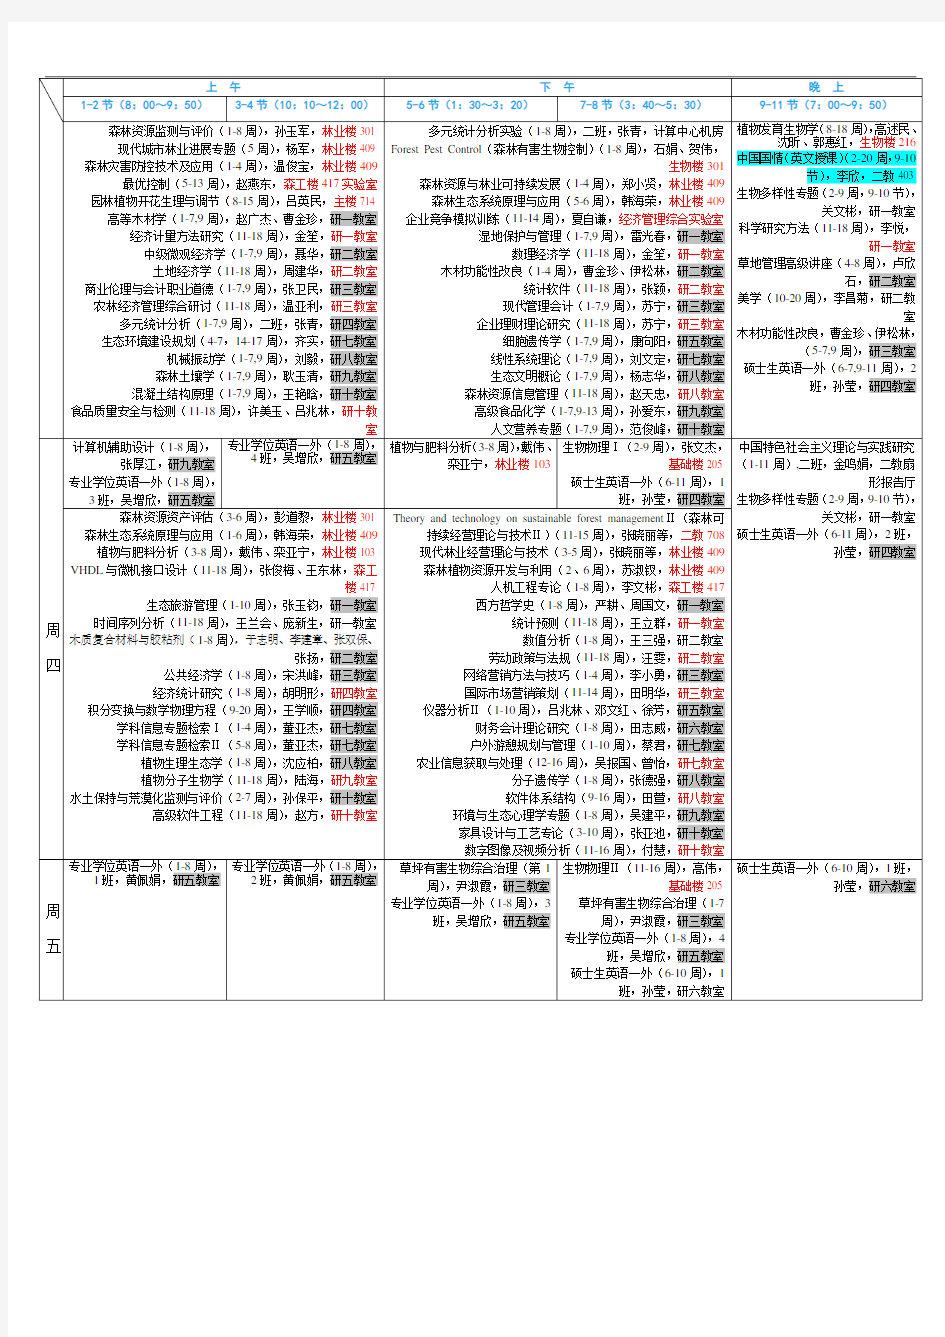 北京林业大学 春季研究生课程表